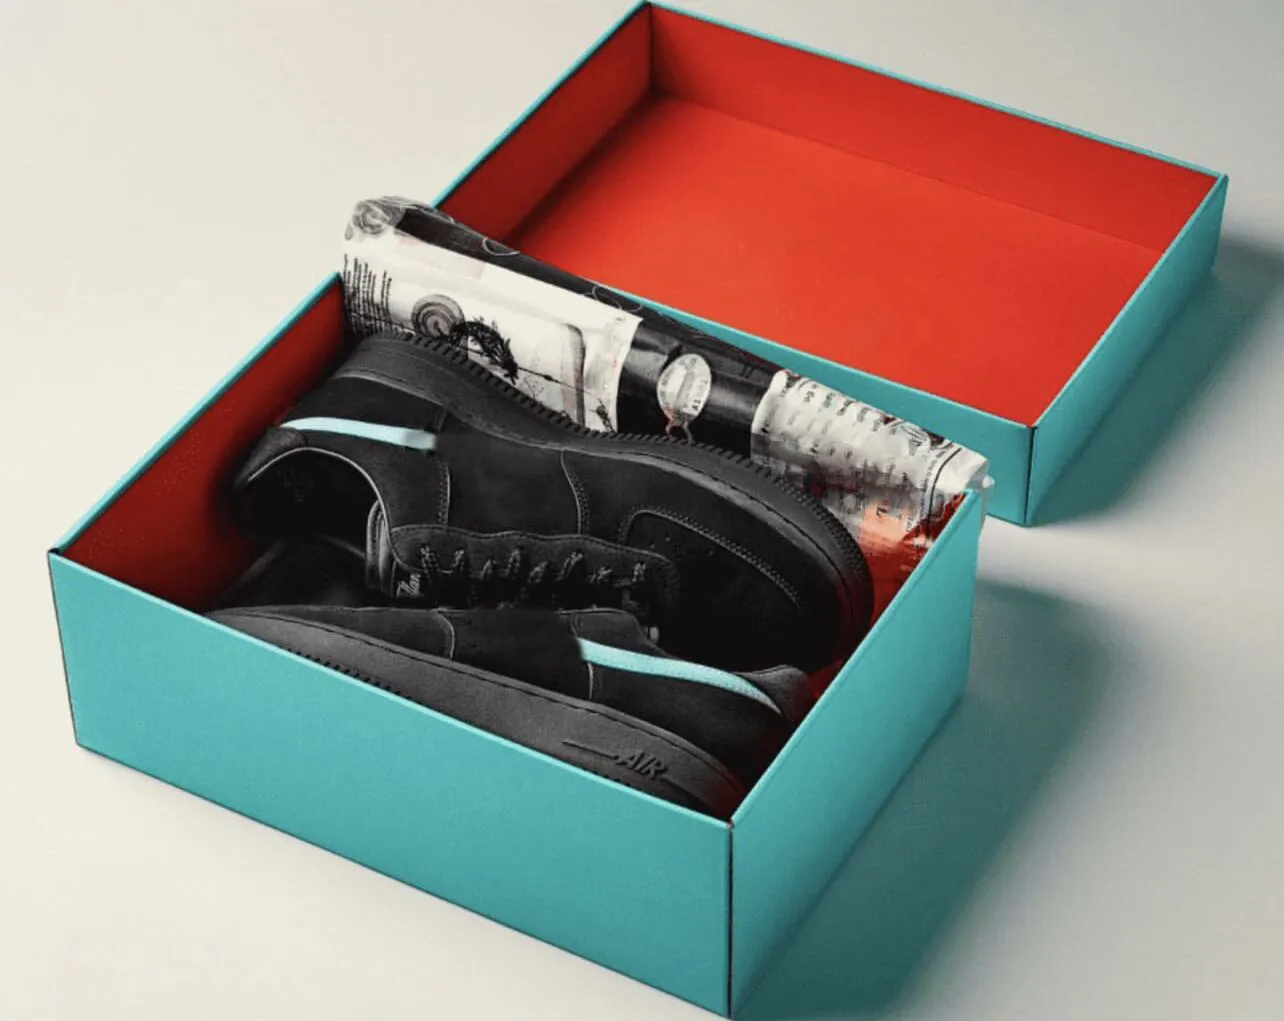 Autentico Tiffany X 1 scarpe da corsa da uomo a bassa sneaker nero blu multi colore dz1382-001 allenatori uomini uomini donne sneaker sportive con scatola originale dimensione 36-46